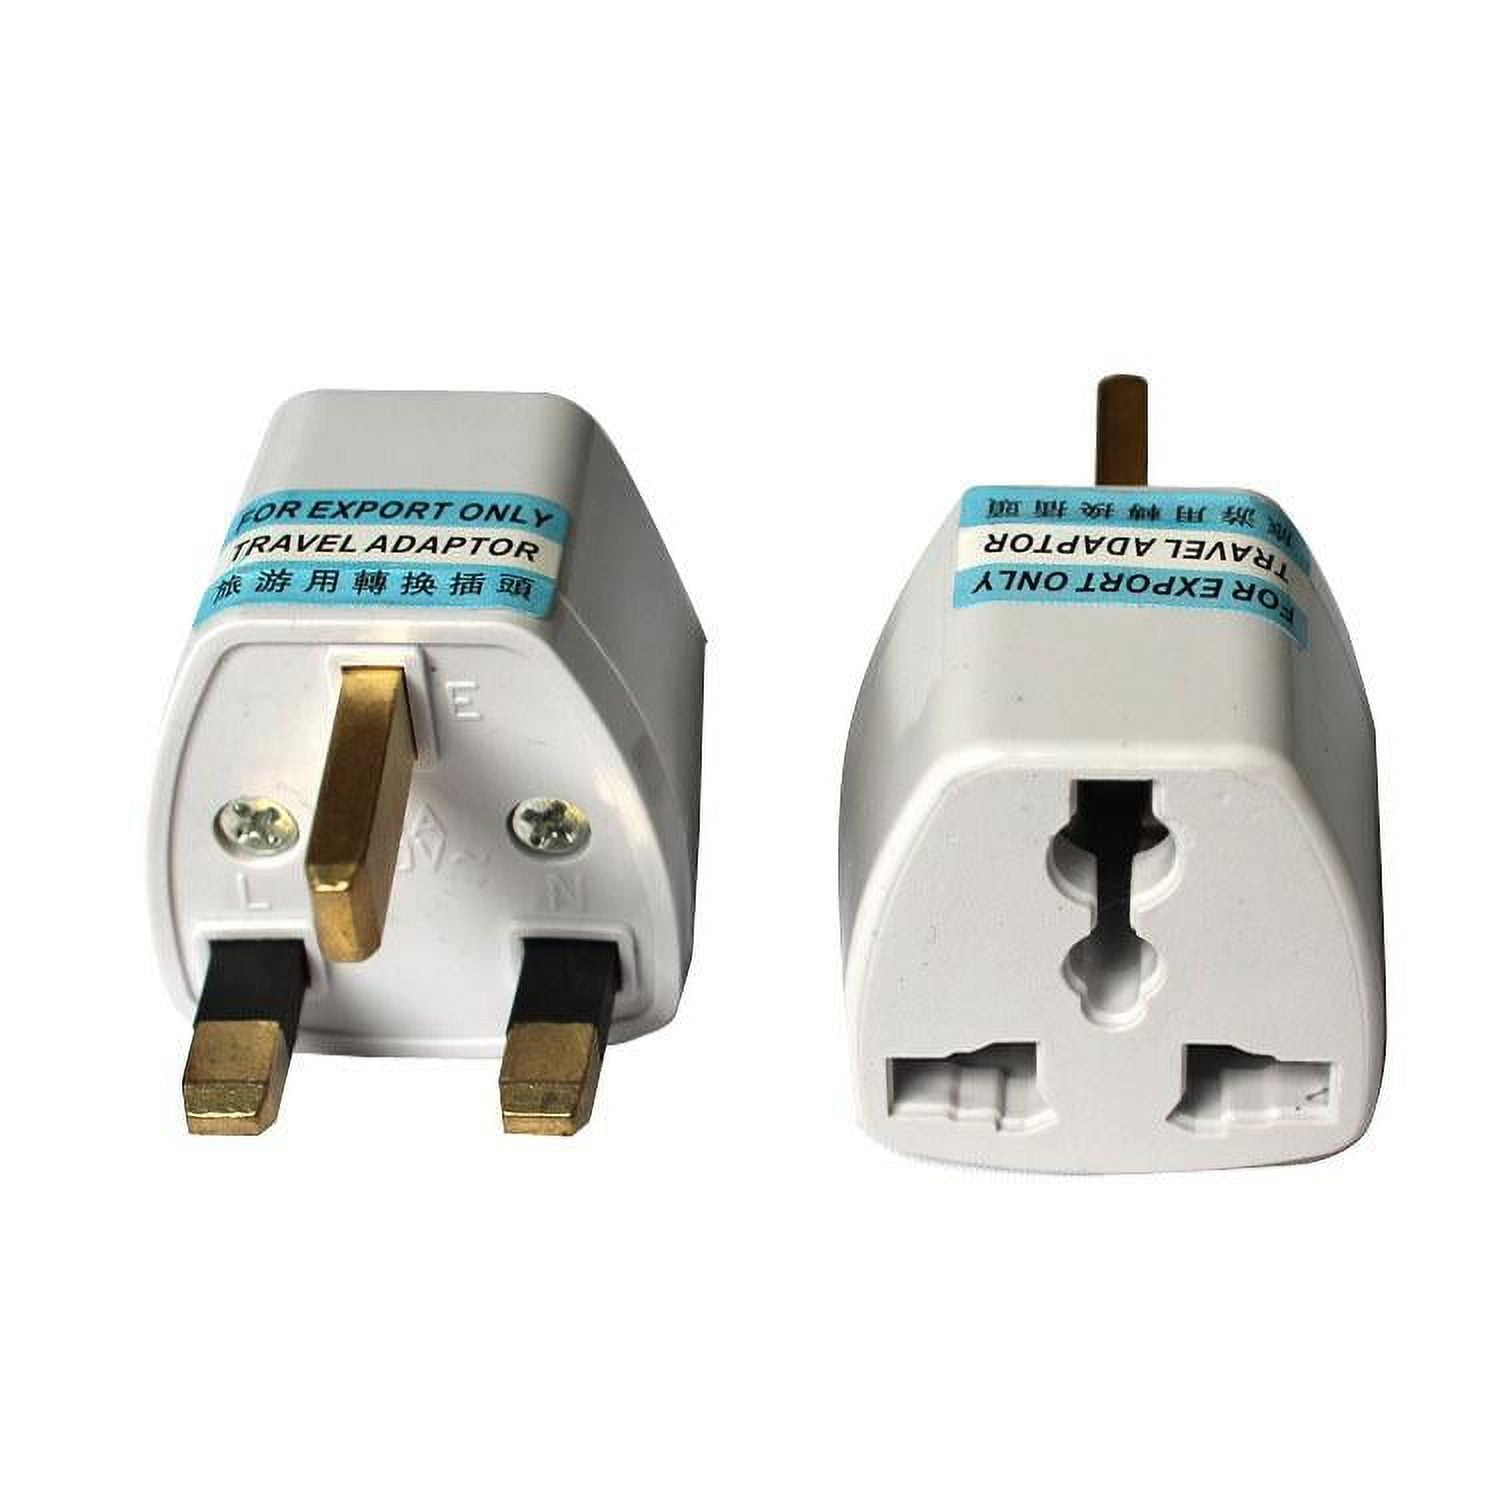 5V 3.6A Universal Travel Plug Adapter, Voltage Converter 220V to 110V Power  Switch Socket Outlet for UK/ EU/ Au/ Us Worldwide Outlet International  Adaptor - China Travel Adapter, Universal Adapter